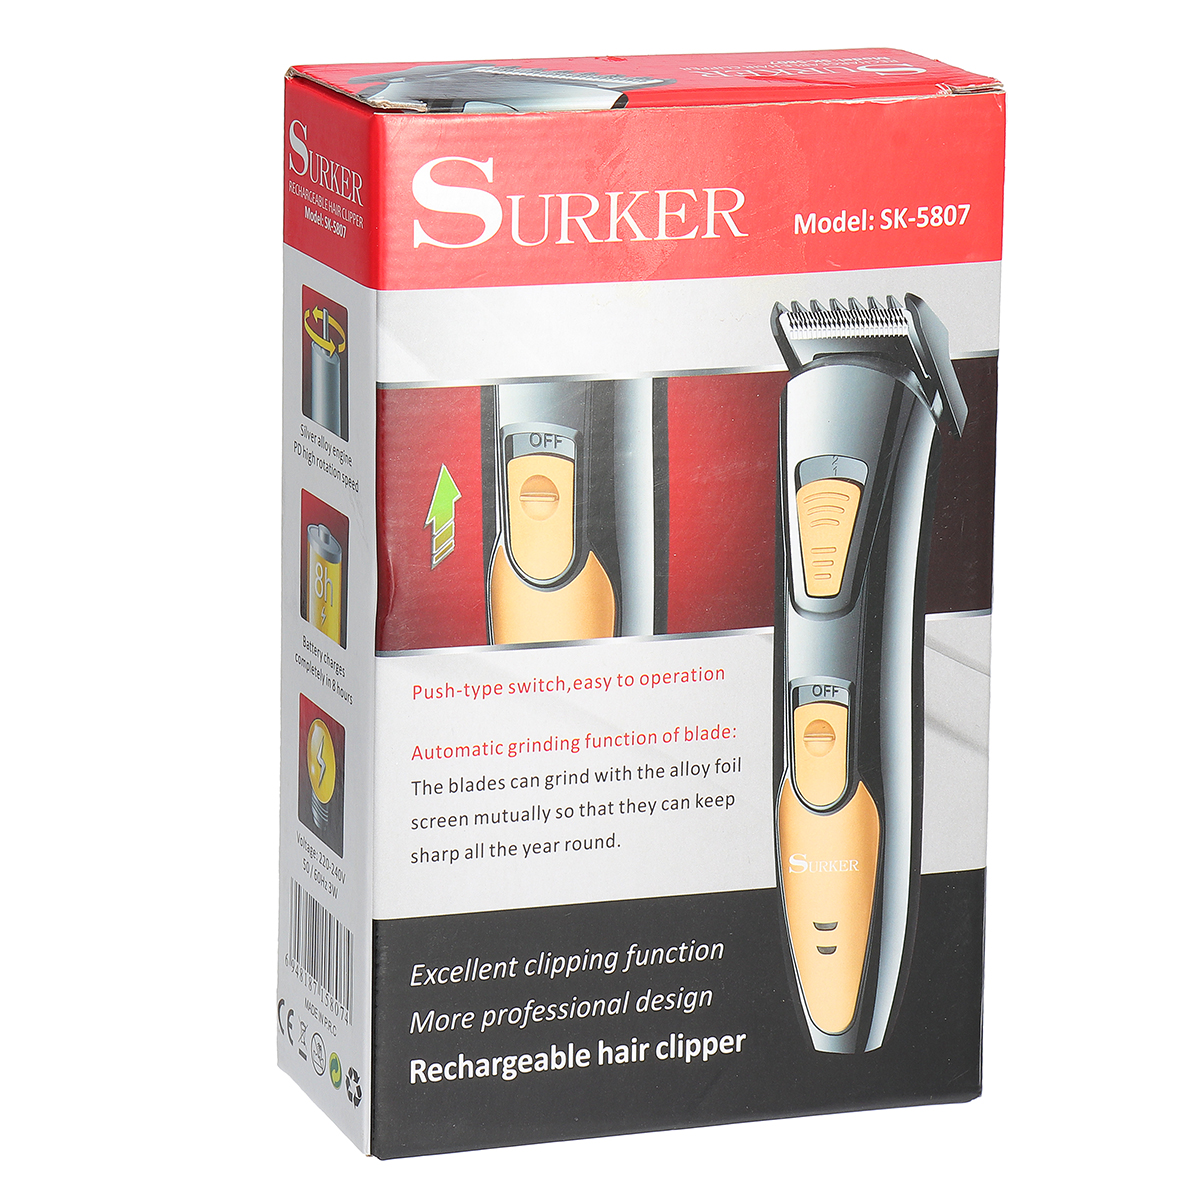 Surker-Electric-Hair-Clipper-Trimmer-Shaver-Men-Children-Barber-Salon-Home-Use-Rechargeable-220-240V-1306227